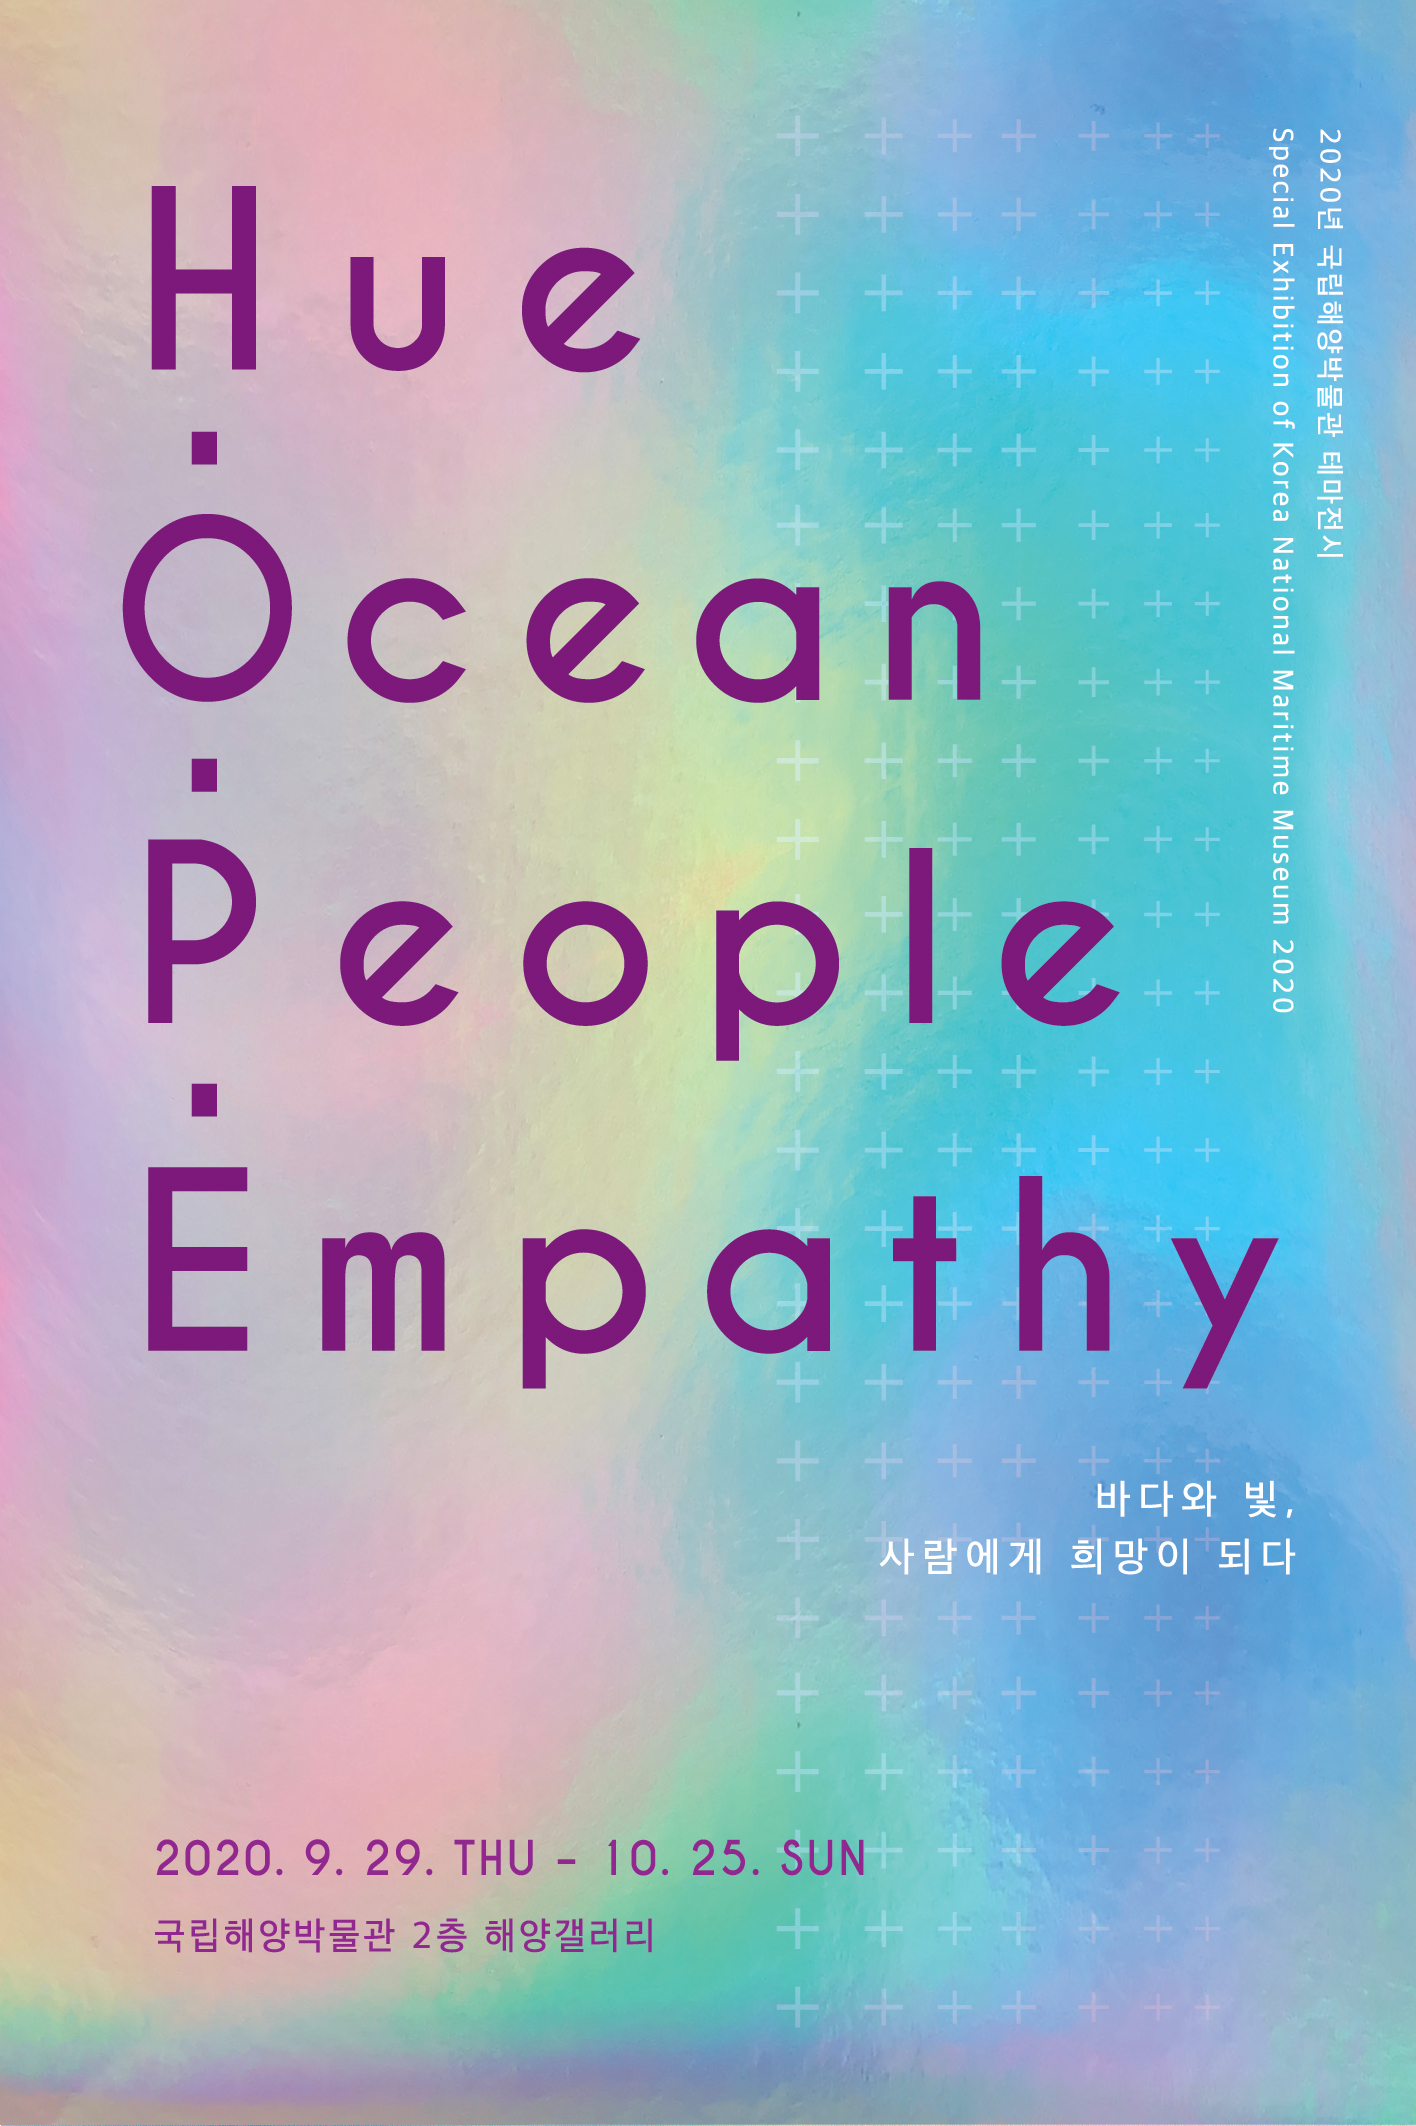 2020년 국립해양박물관 테마전시 Hue・Ocean・People・Empathy 바다와 빛, 사람에게 희망이 되다 포스터. 전시일정은 2020년 9월 29일 화요일 부터 10월 25일 일요일까지 국립해양박물관 2층 해양갤러리에서 진행됩니다.